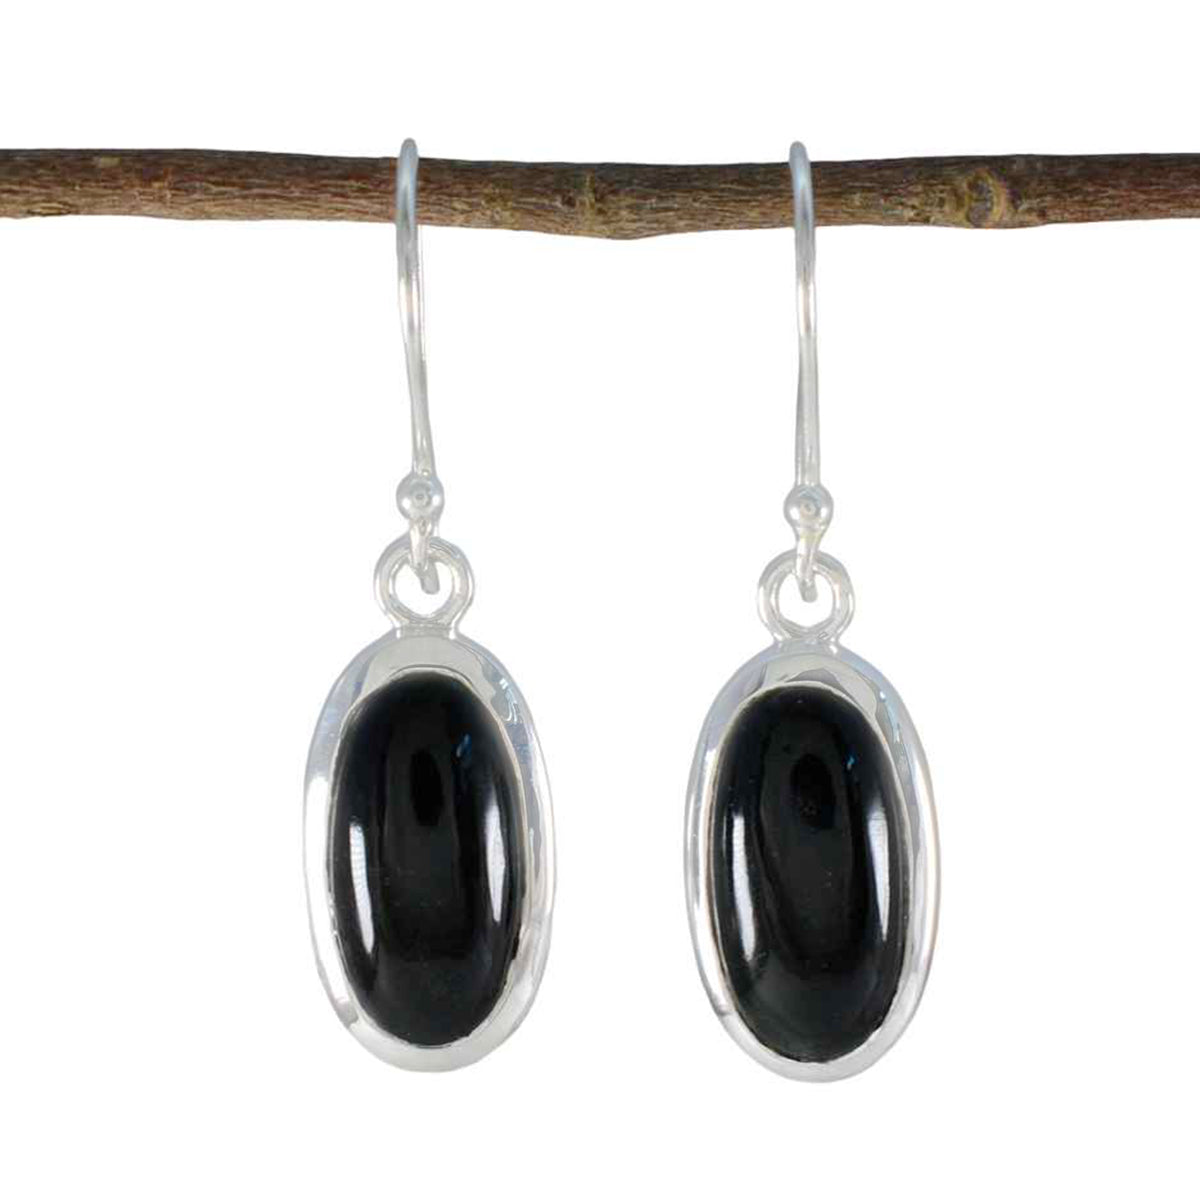 Riyo Pleasing 925 Sterling Silver Earring For Women Black Onyx Earring Bezel Setting Black Earring Dangle Earring